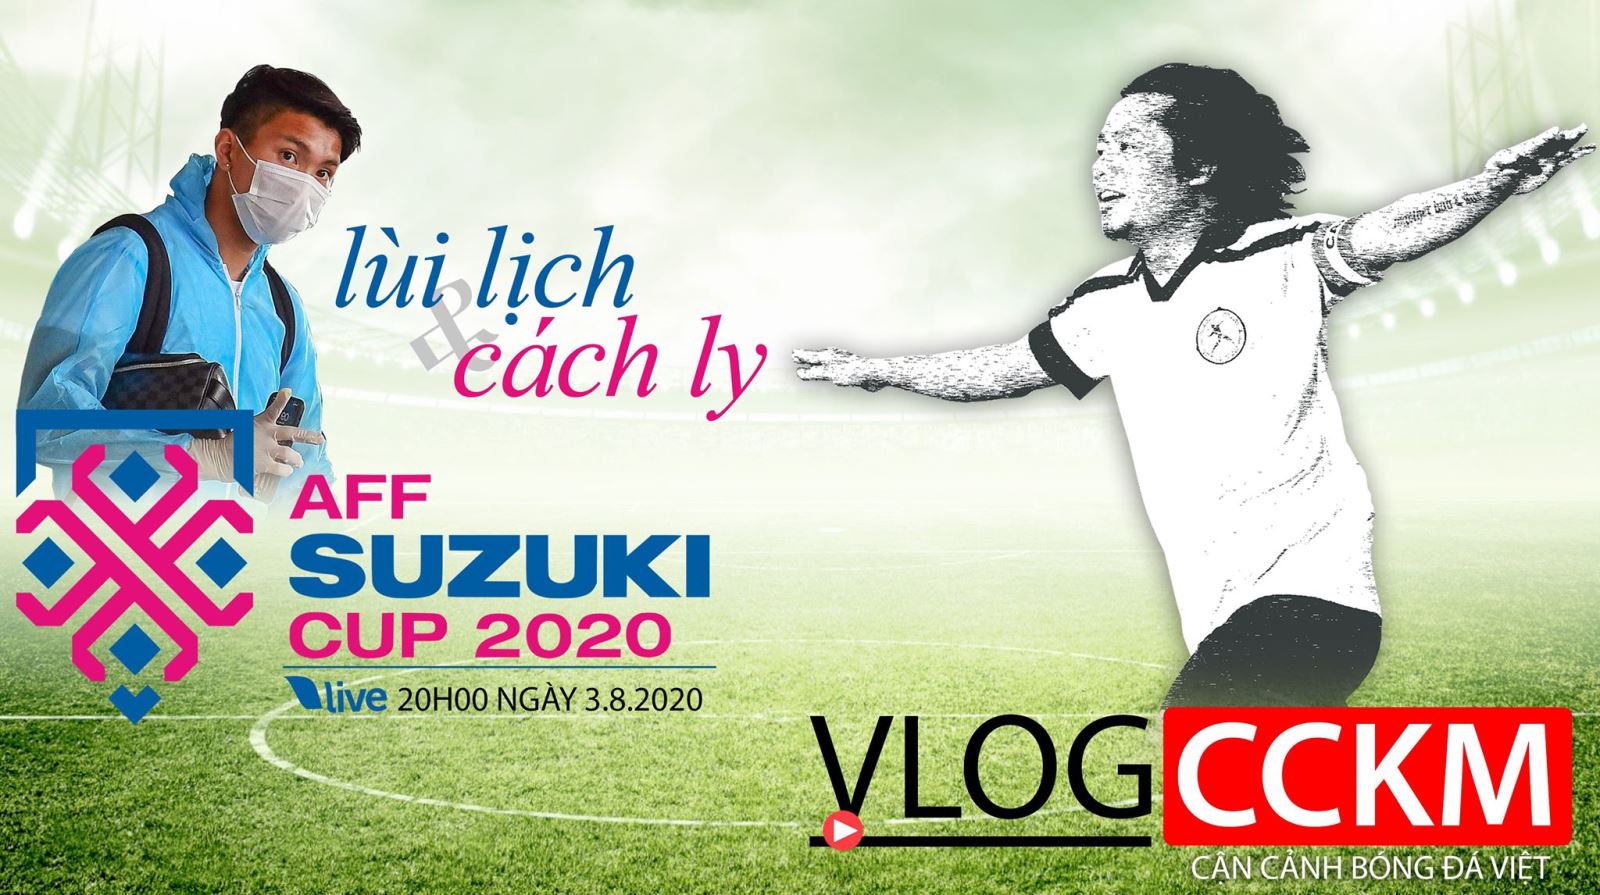 Vlog CCKM - Cận cảnh bóng đá Việt. Số 20: Hoãn AFF Cup 2020 và Văn Hậu đi cách ly